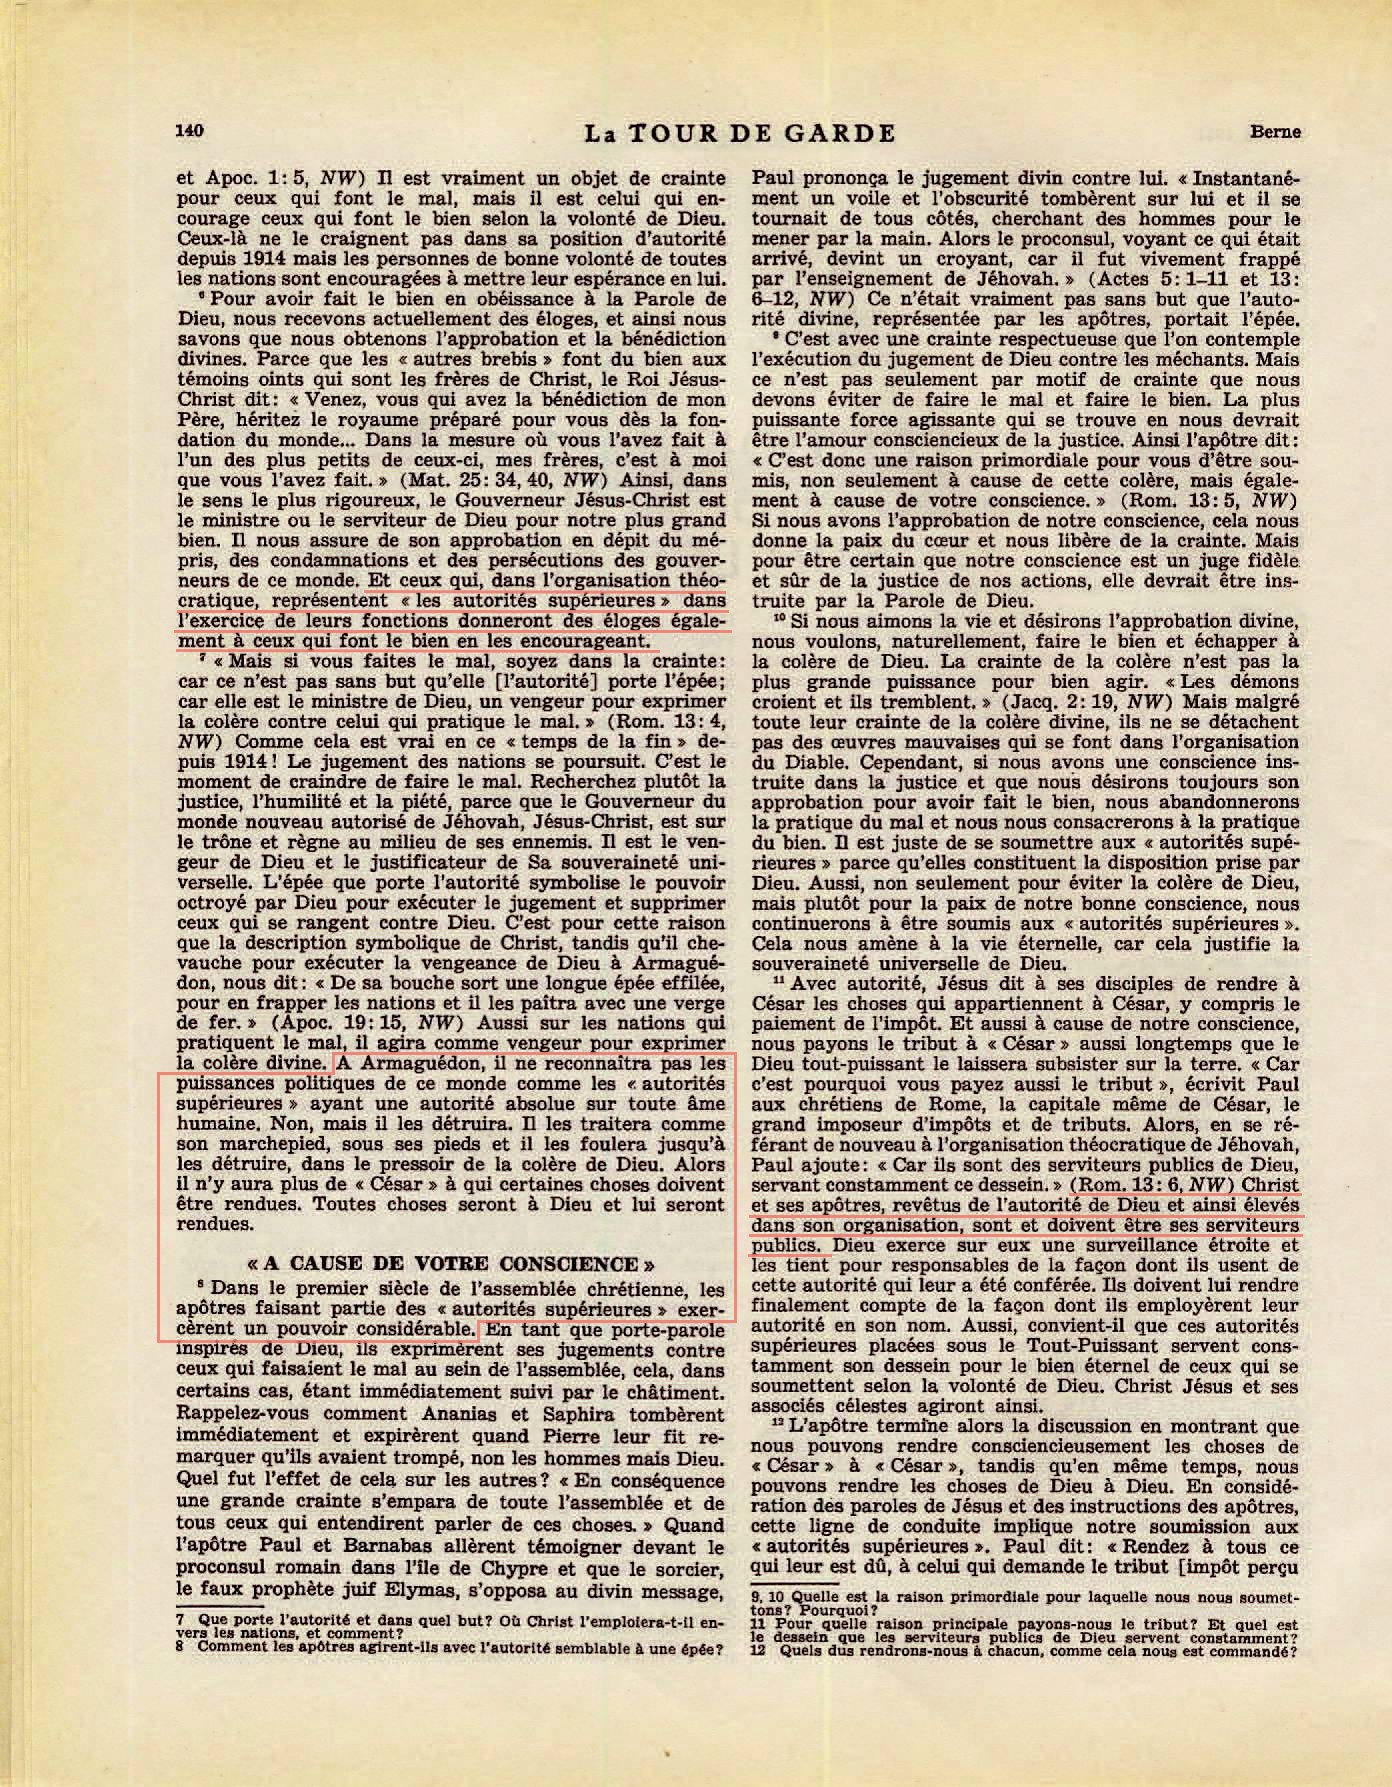 Les autorités supérieures  - Page 2 La-Tour-de-Garde-1-mai-1951-p140